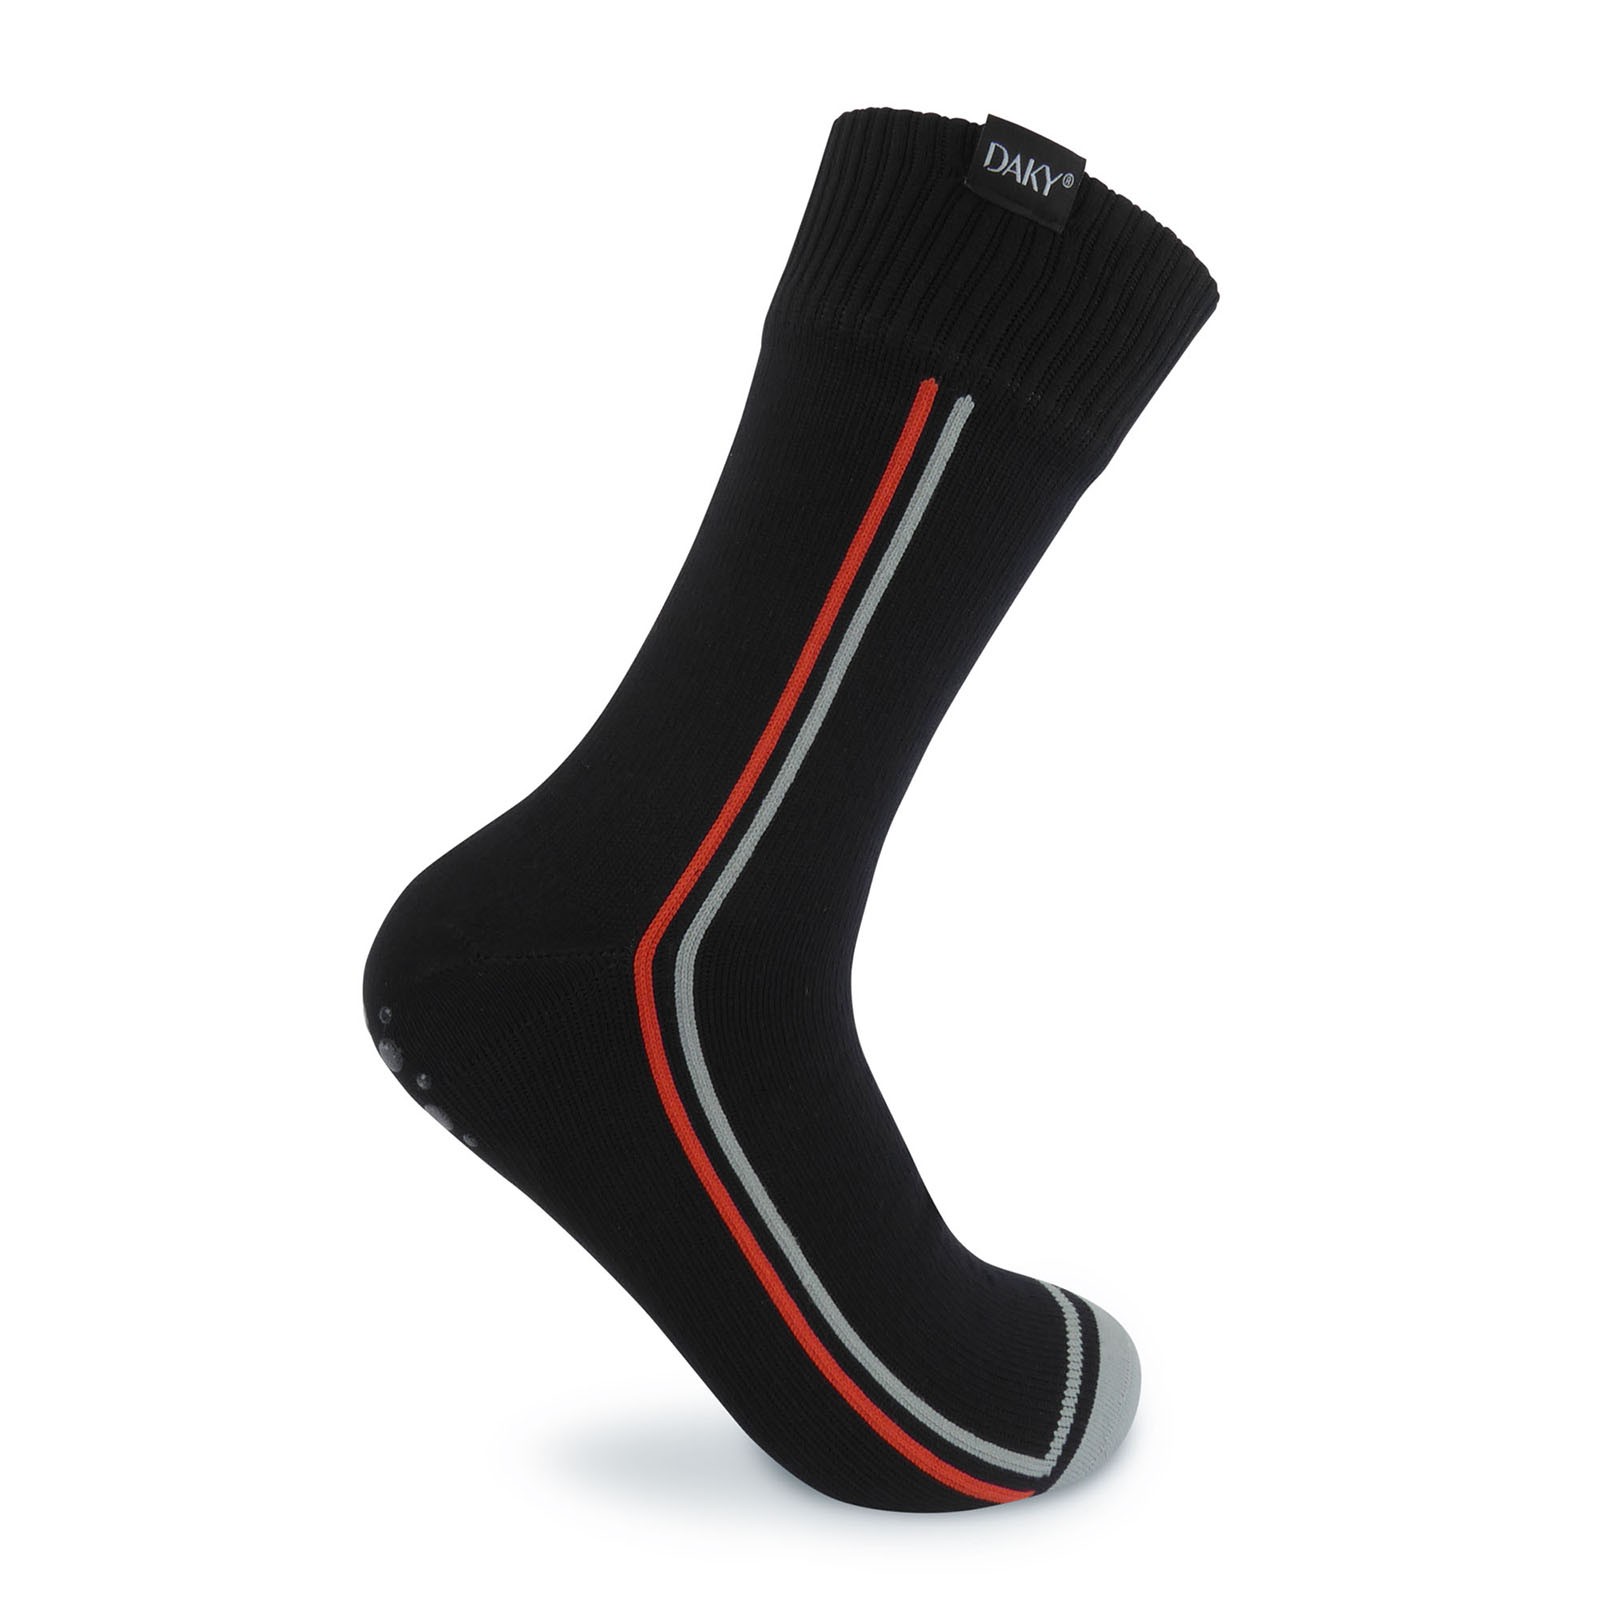 DAKY (SKYLINE Z) – WUDU (Masah) Compliant & Waterproof Socks